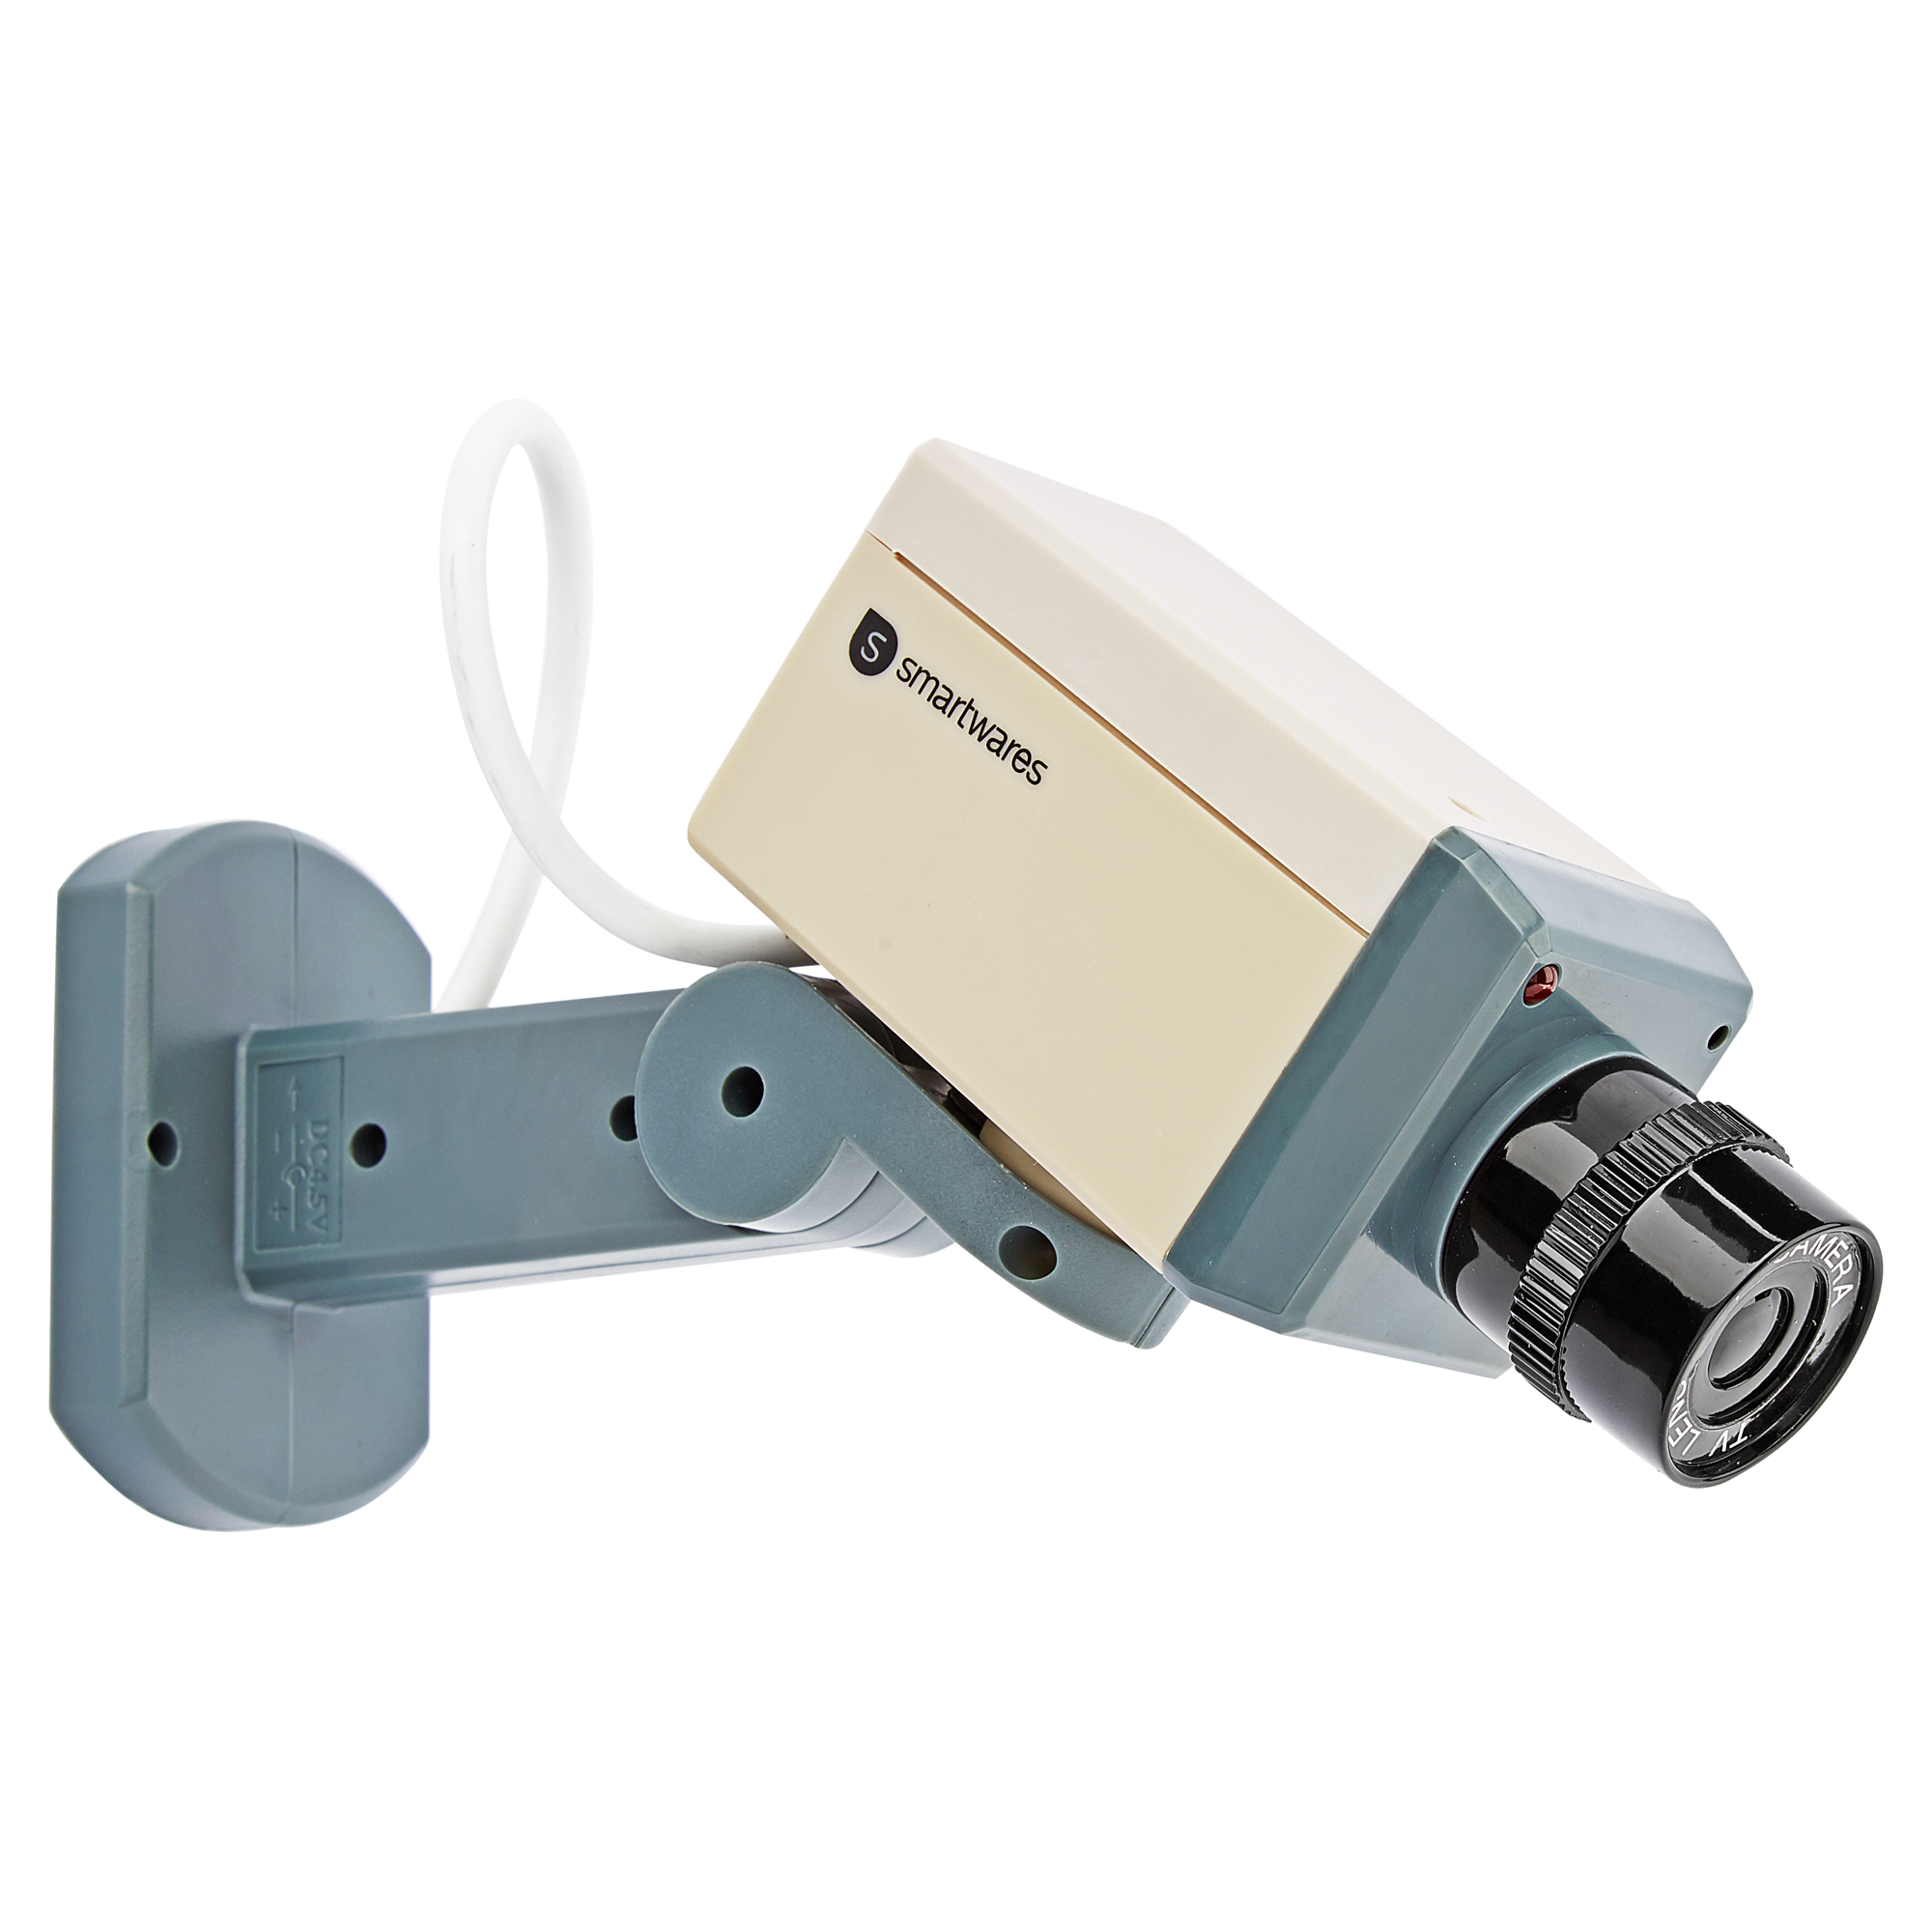 Kamera-Attrappe 'CS33D' mit Bewegungsmelder + product picture